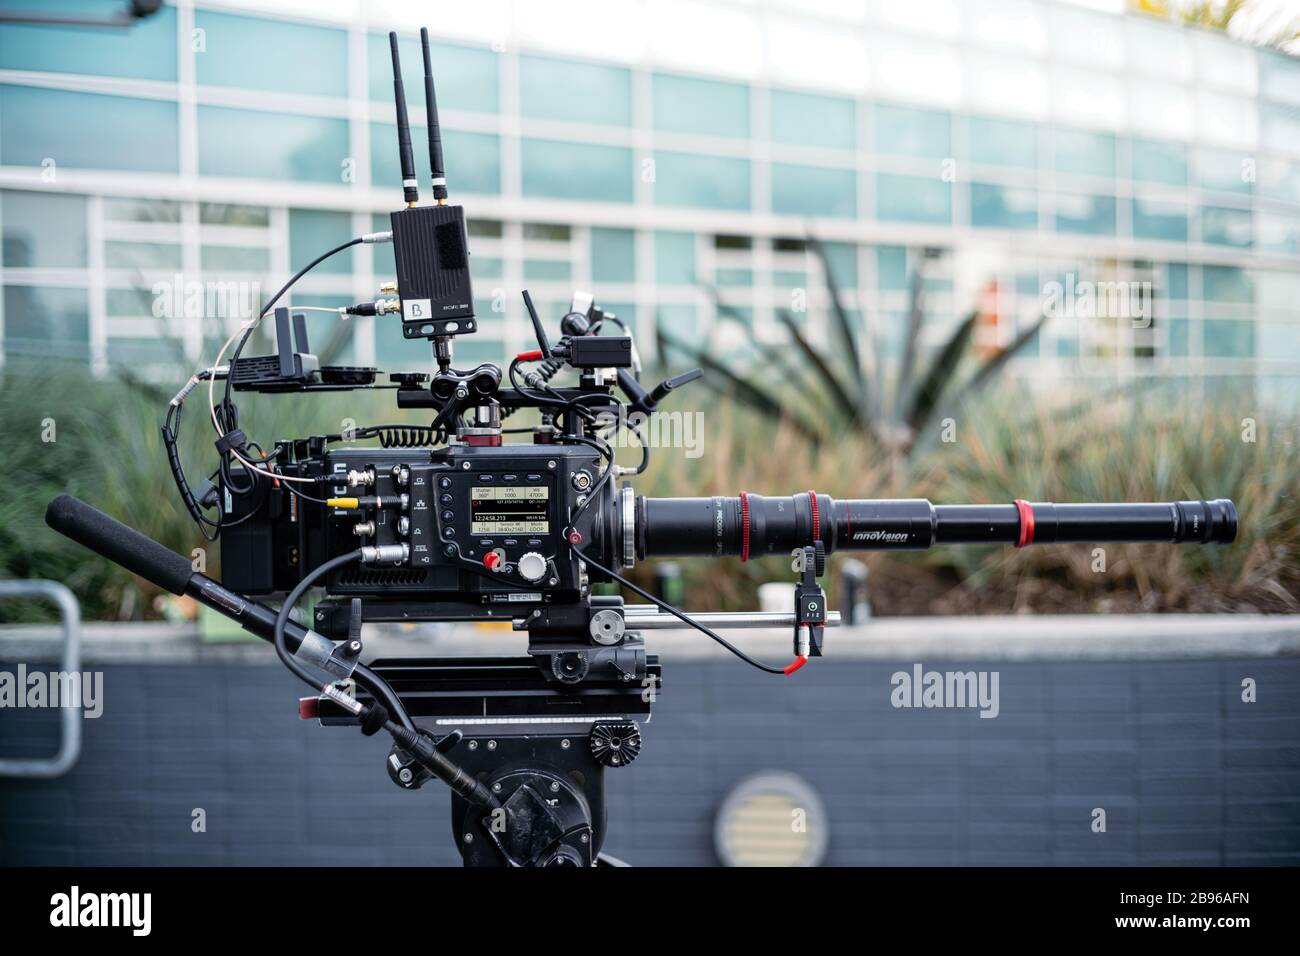 Phantom Flex4k-Filmkamera mit Innovision Probe 2 Objektiv. Kinokamera für spezielle Filme. Los Angeles, Kalifornien. Stockfoto